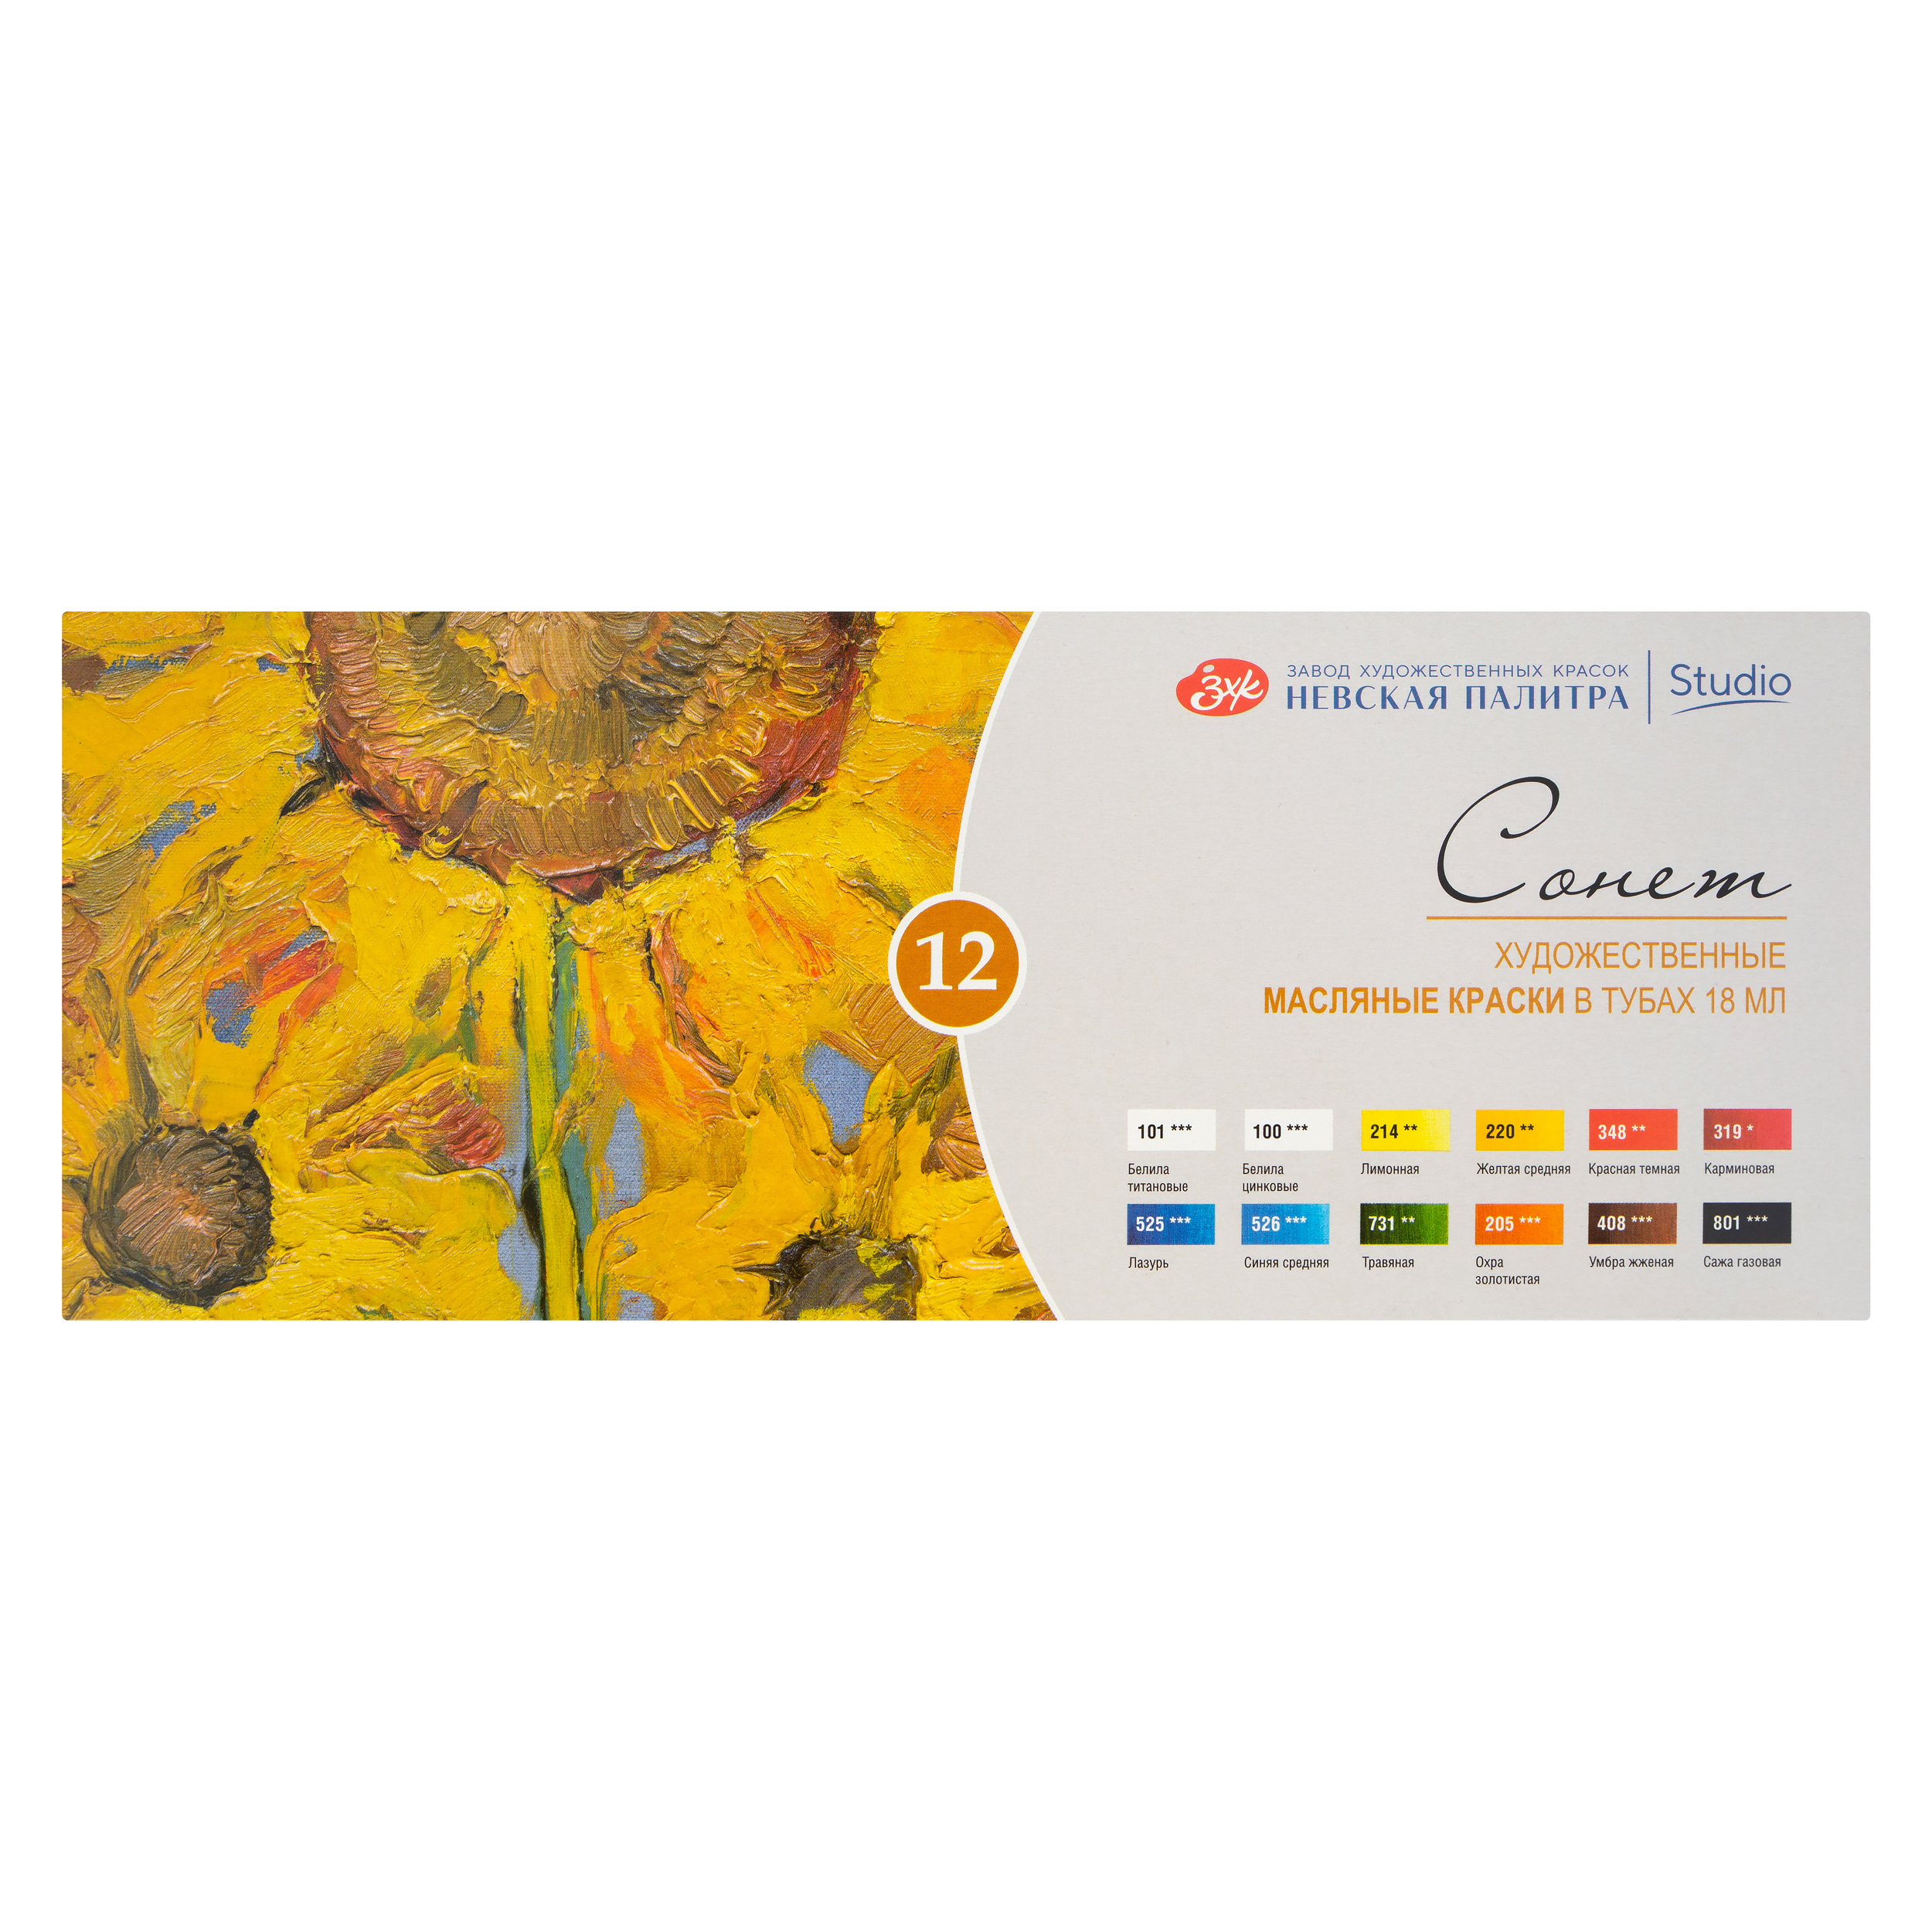 Краски масляные для рисования Невская палитра Сонет 26412027, 12 цветов в тубах по 18 мл